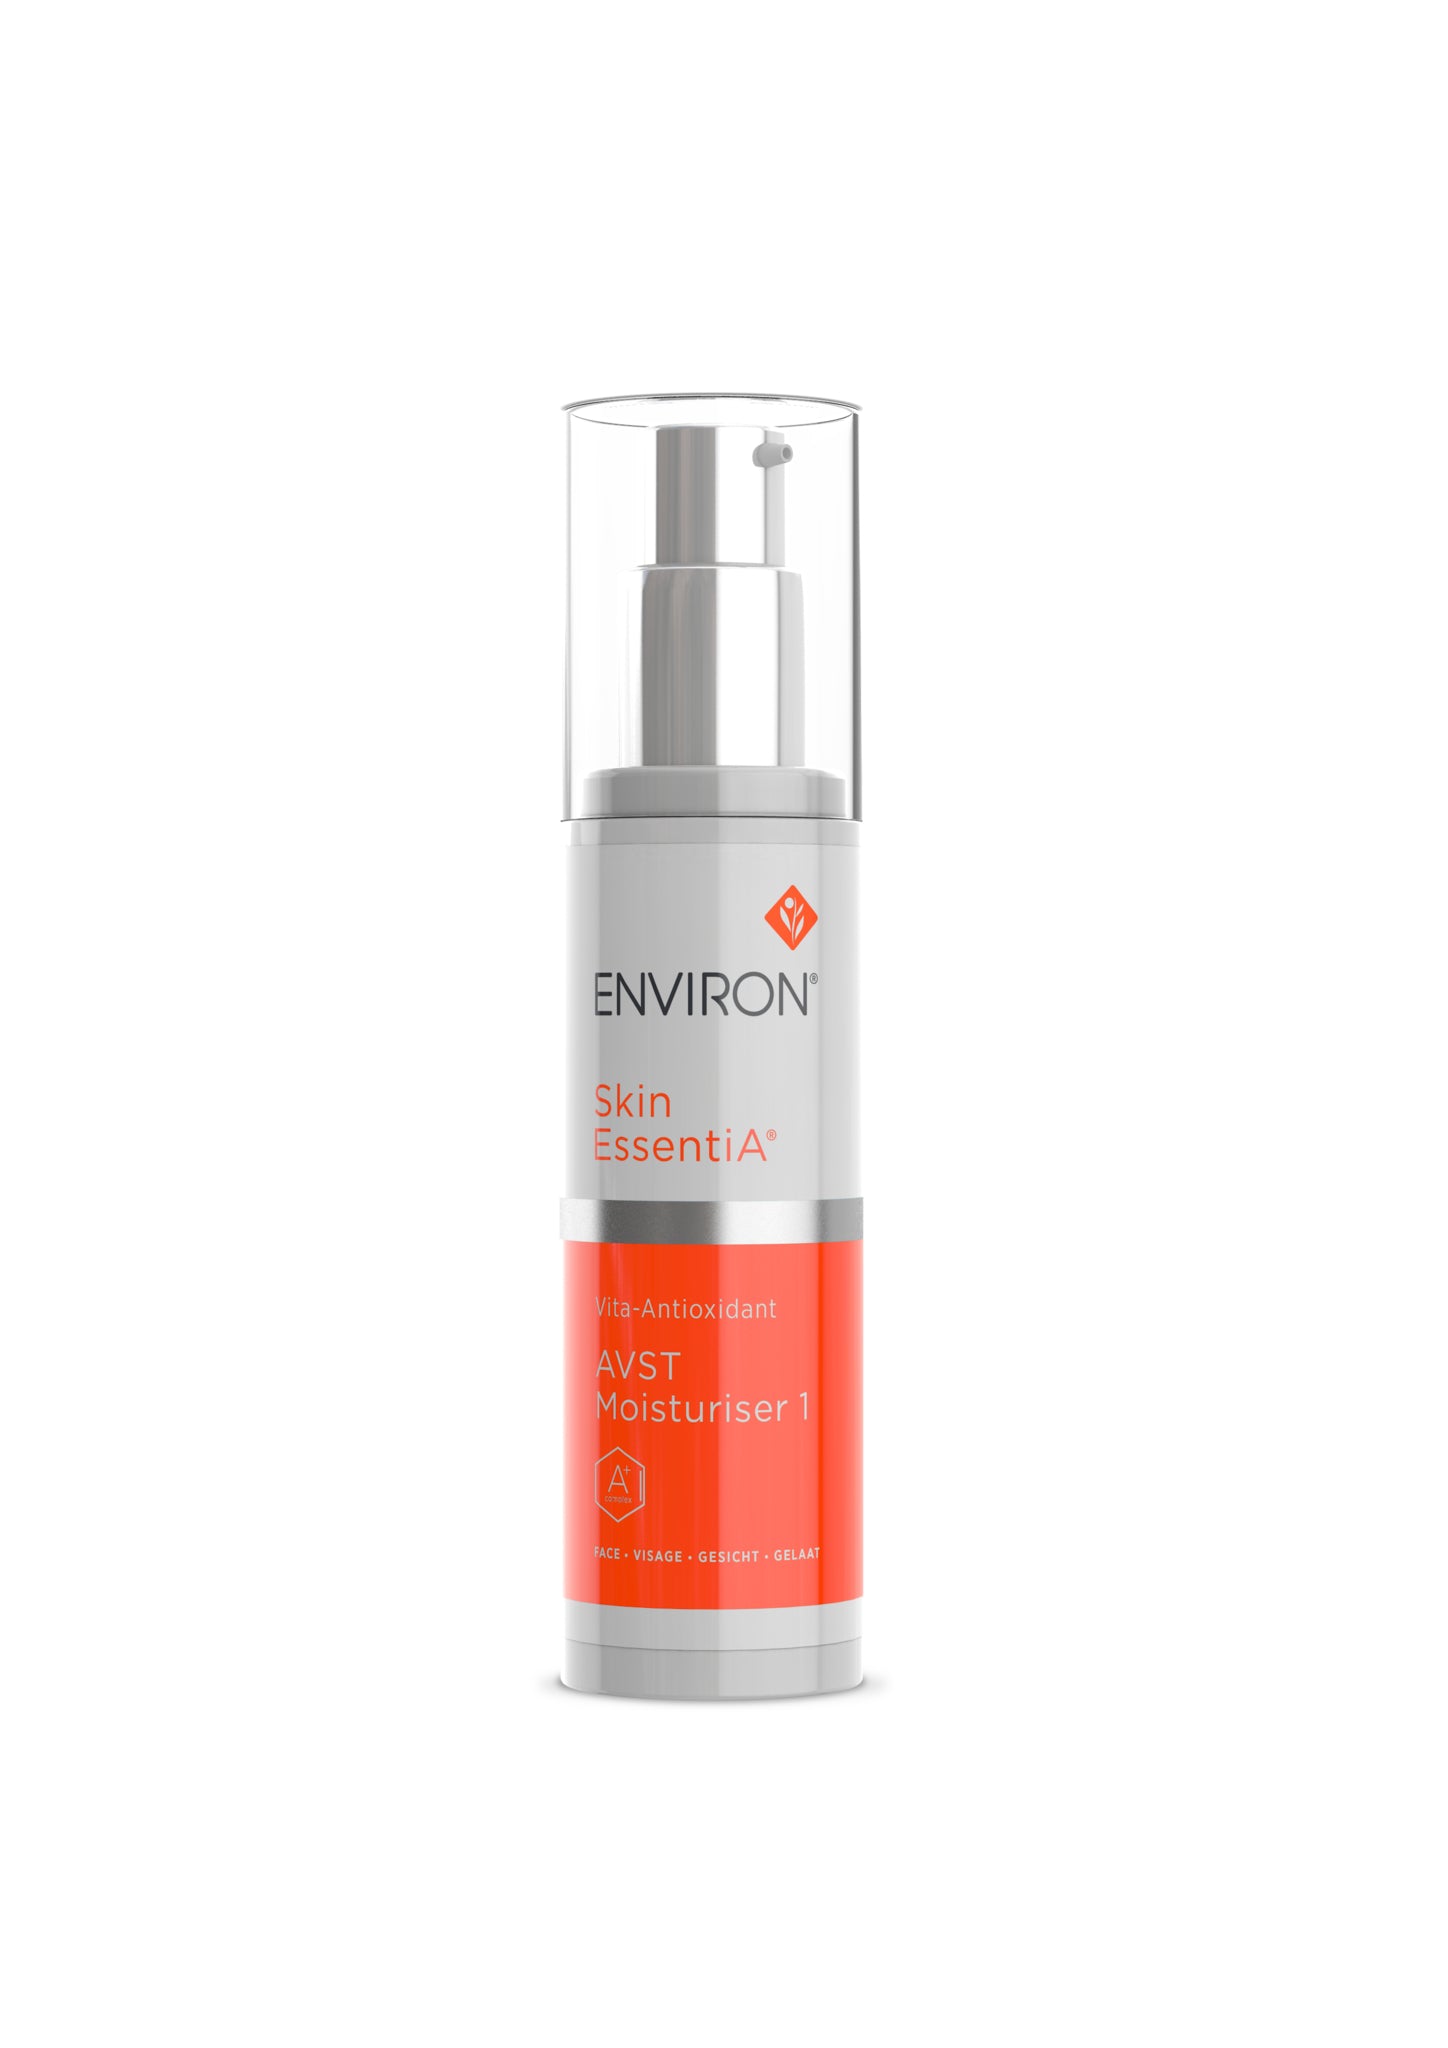 Environ Skin EssentiA® range - Vita-Antioxiant AVST Moisturiser 1